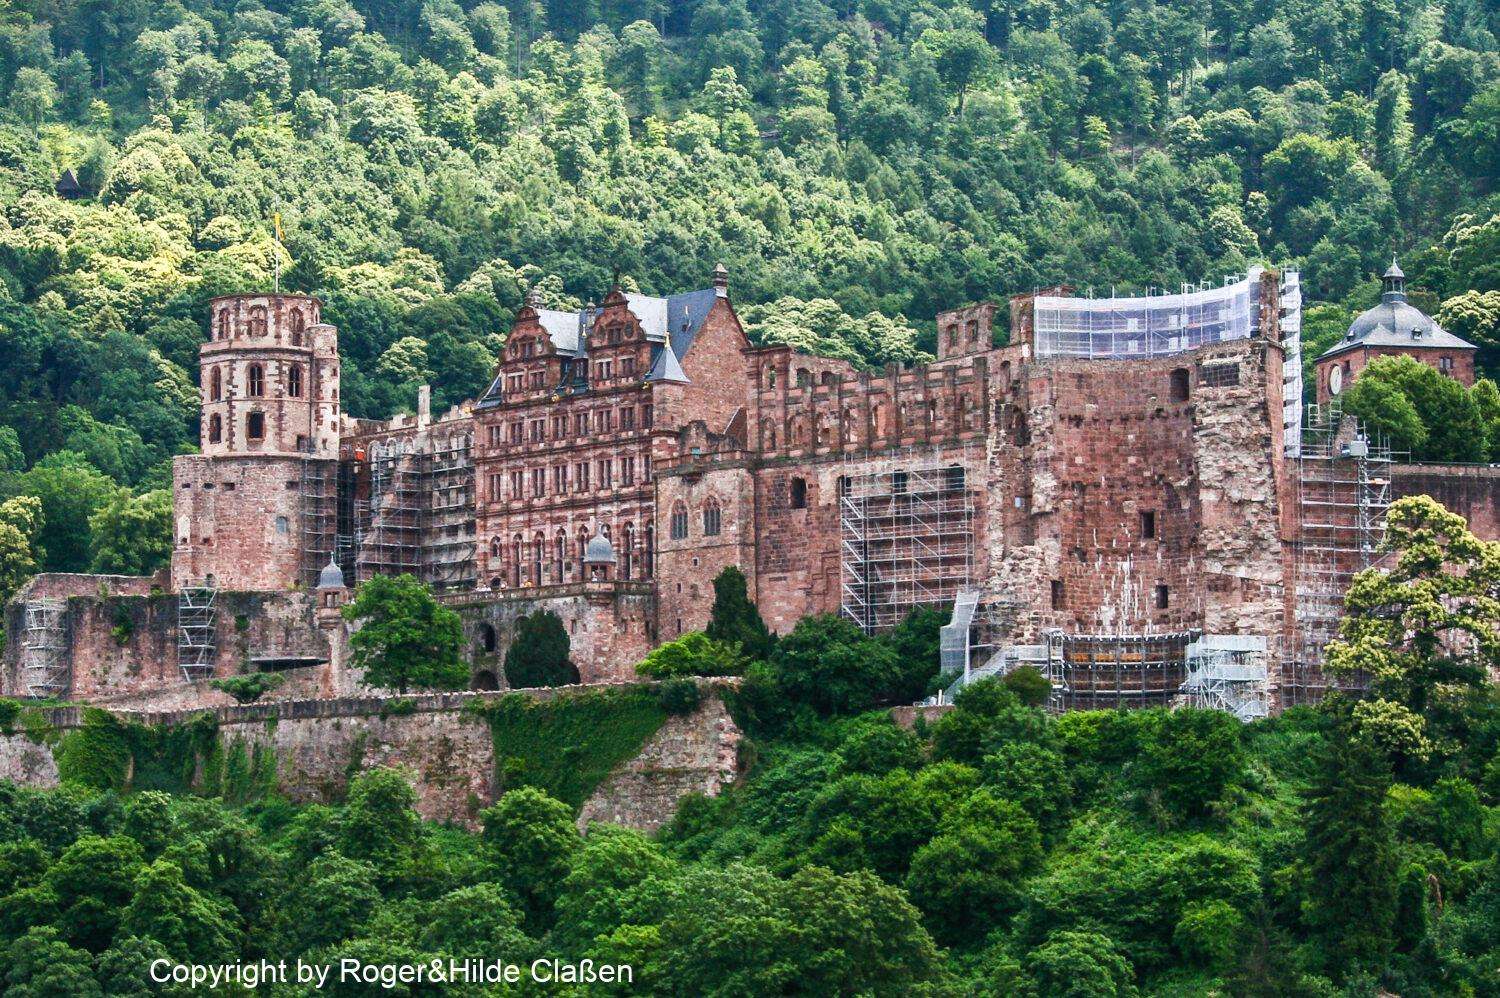 Die Ruine des Heidelberger Schlosses